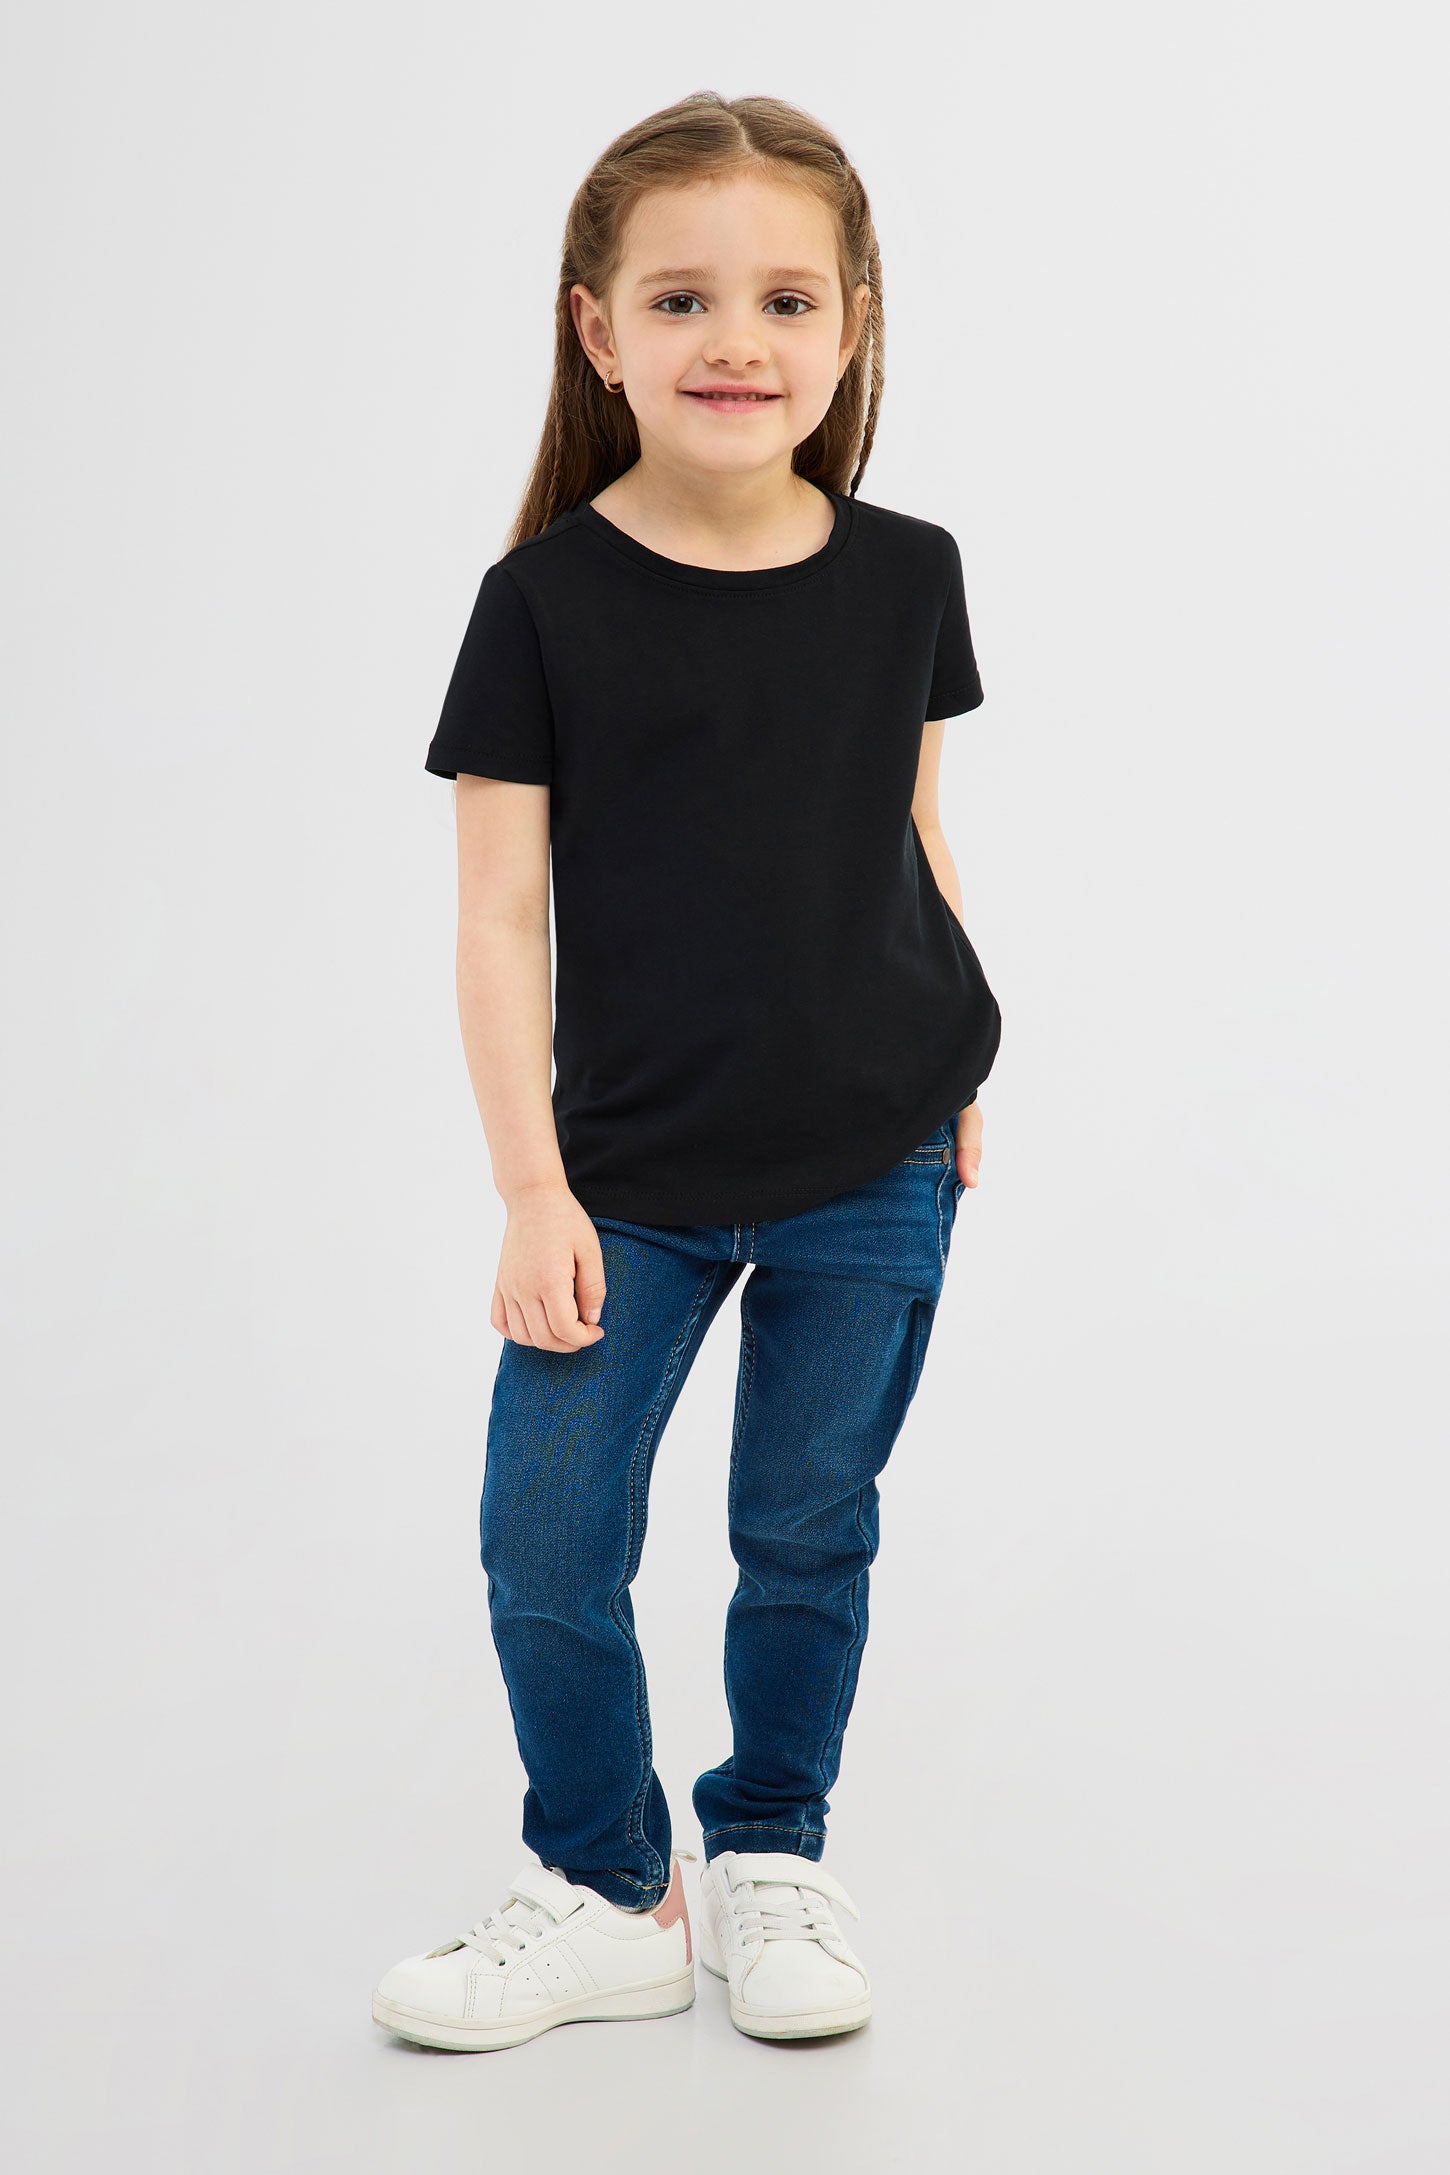 T-shirt en coton, 2/20$ - Enfant fille && NOIR